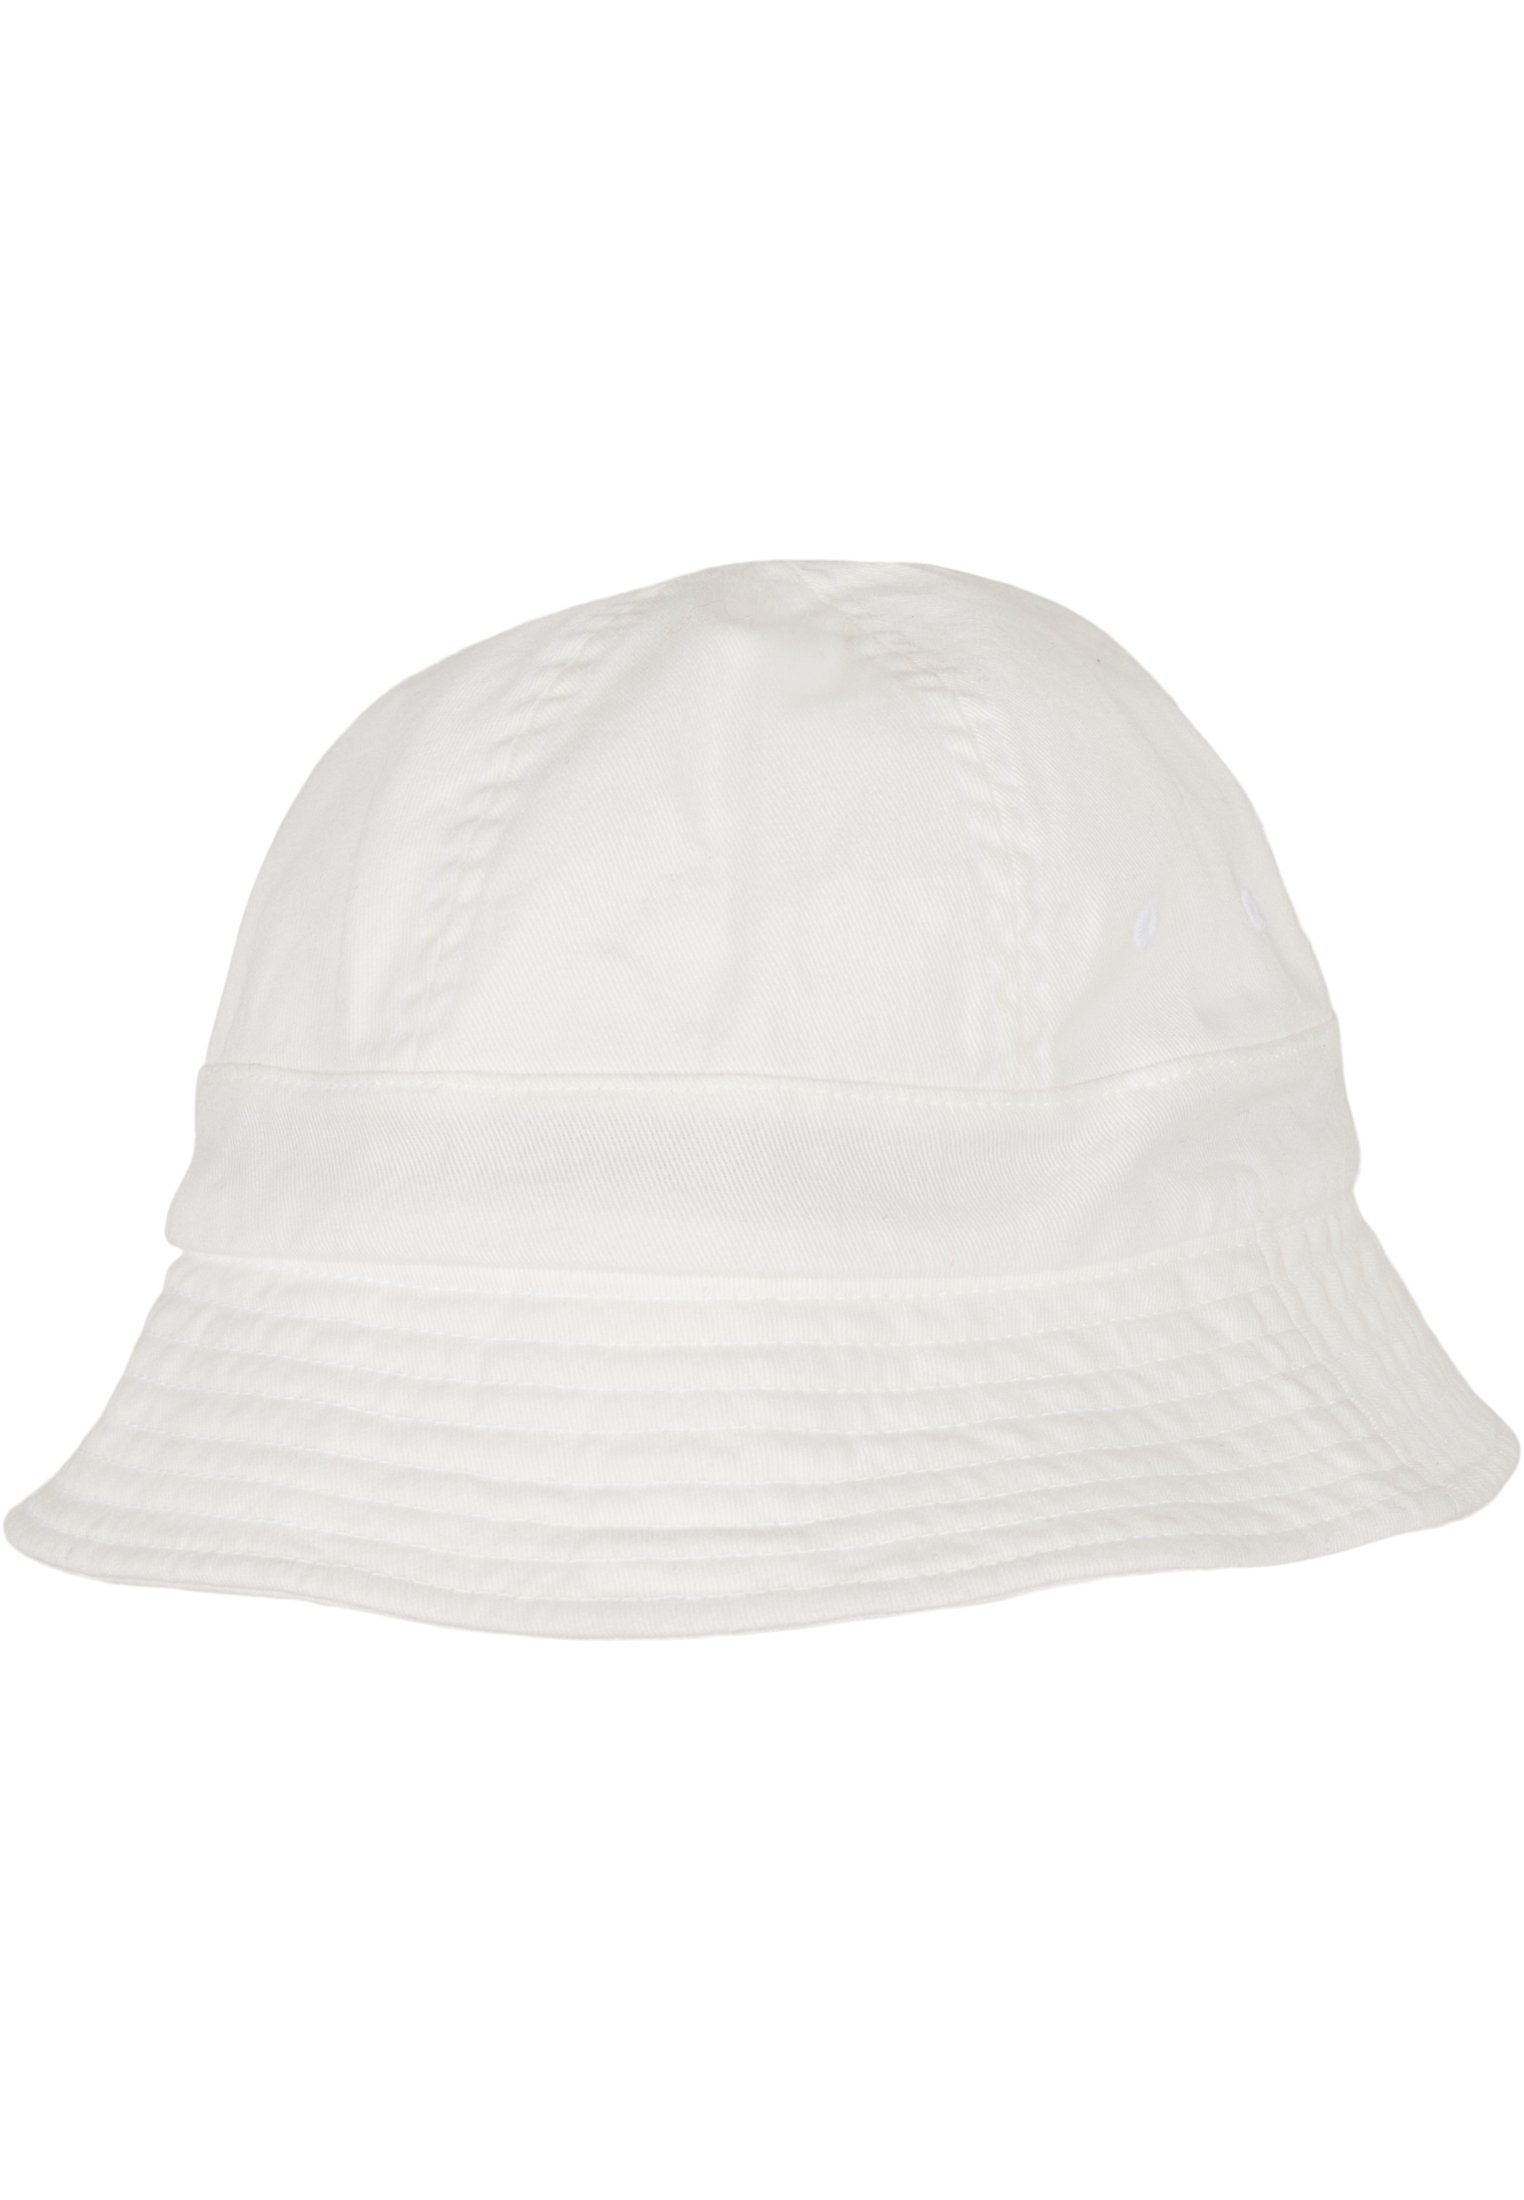 Cap Washing white Flexfit Hat Accessoires Eco Notop Flex Flexfit Tennis